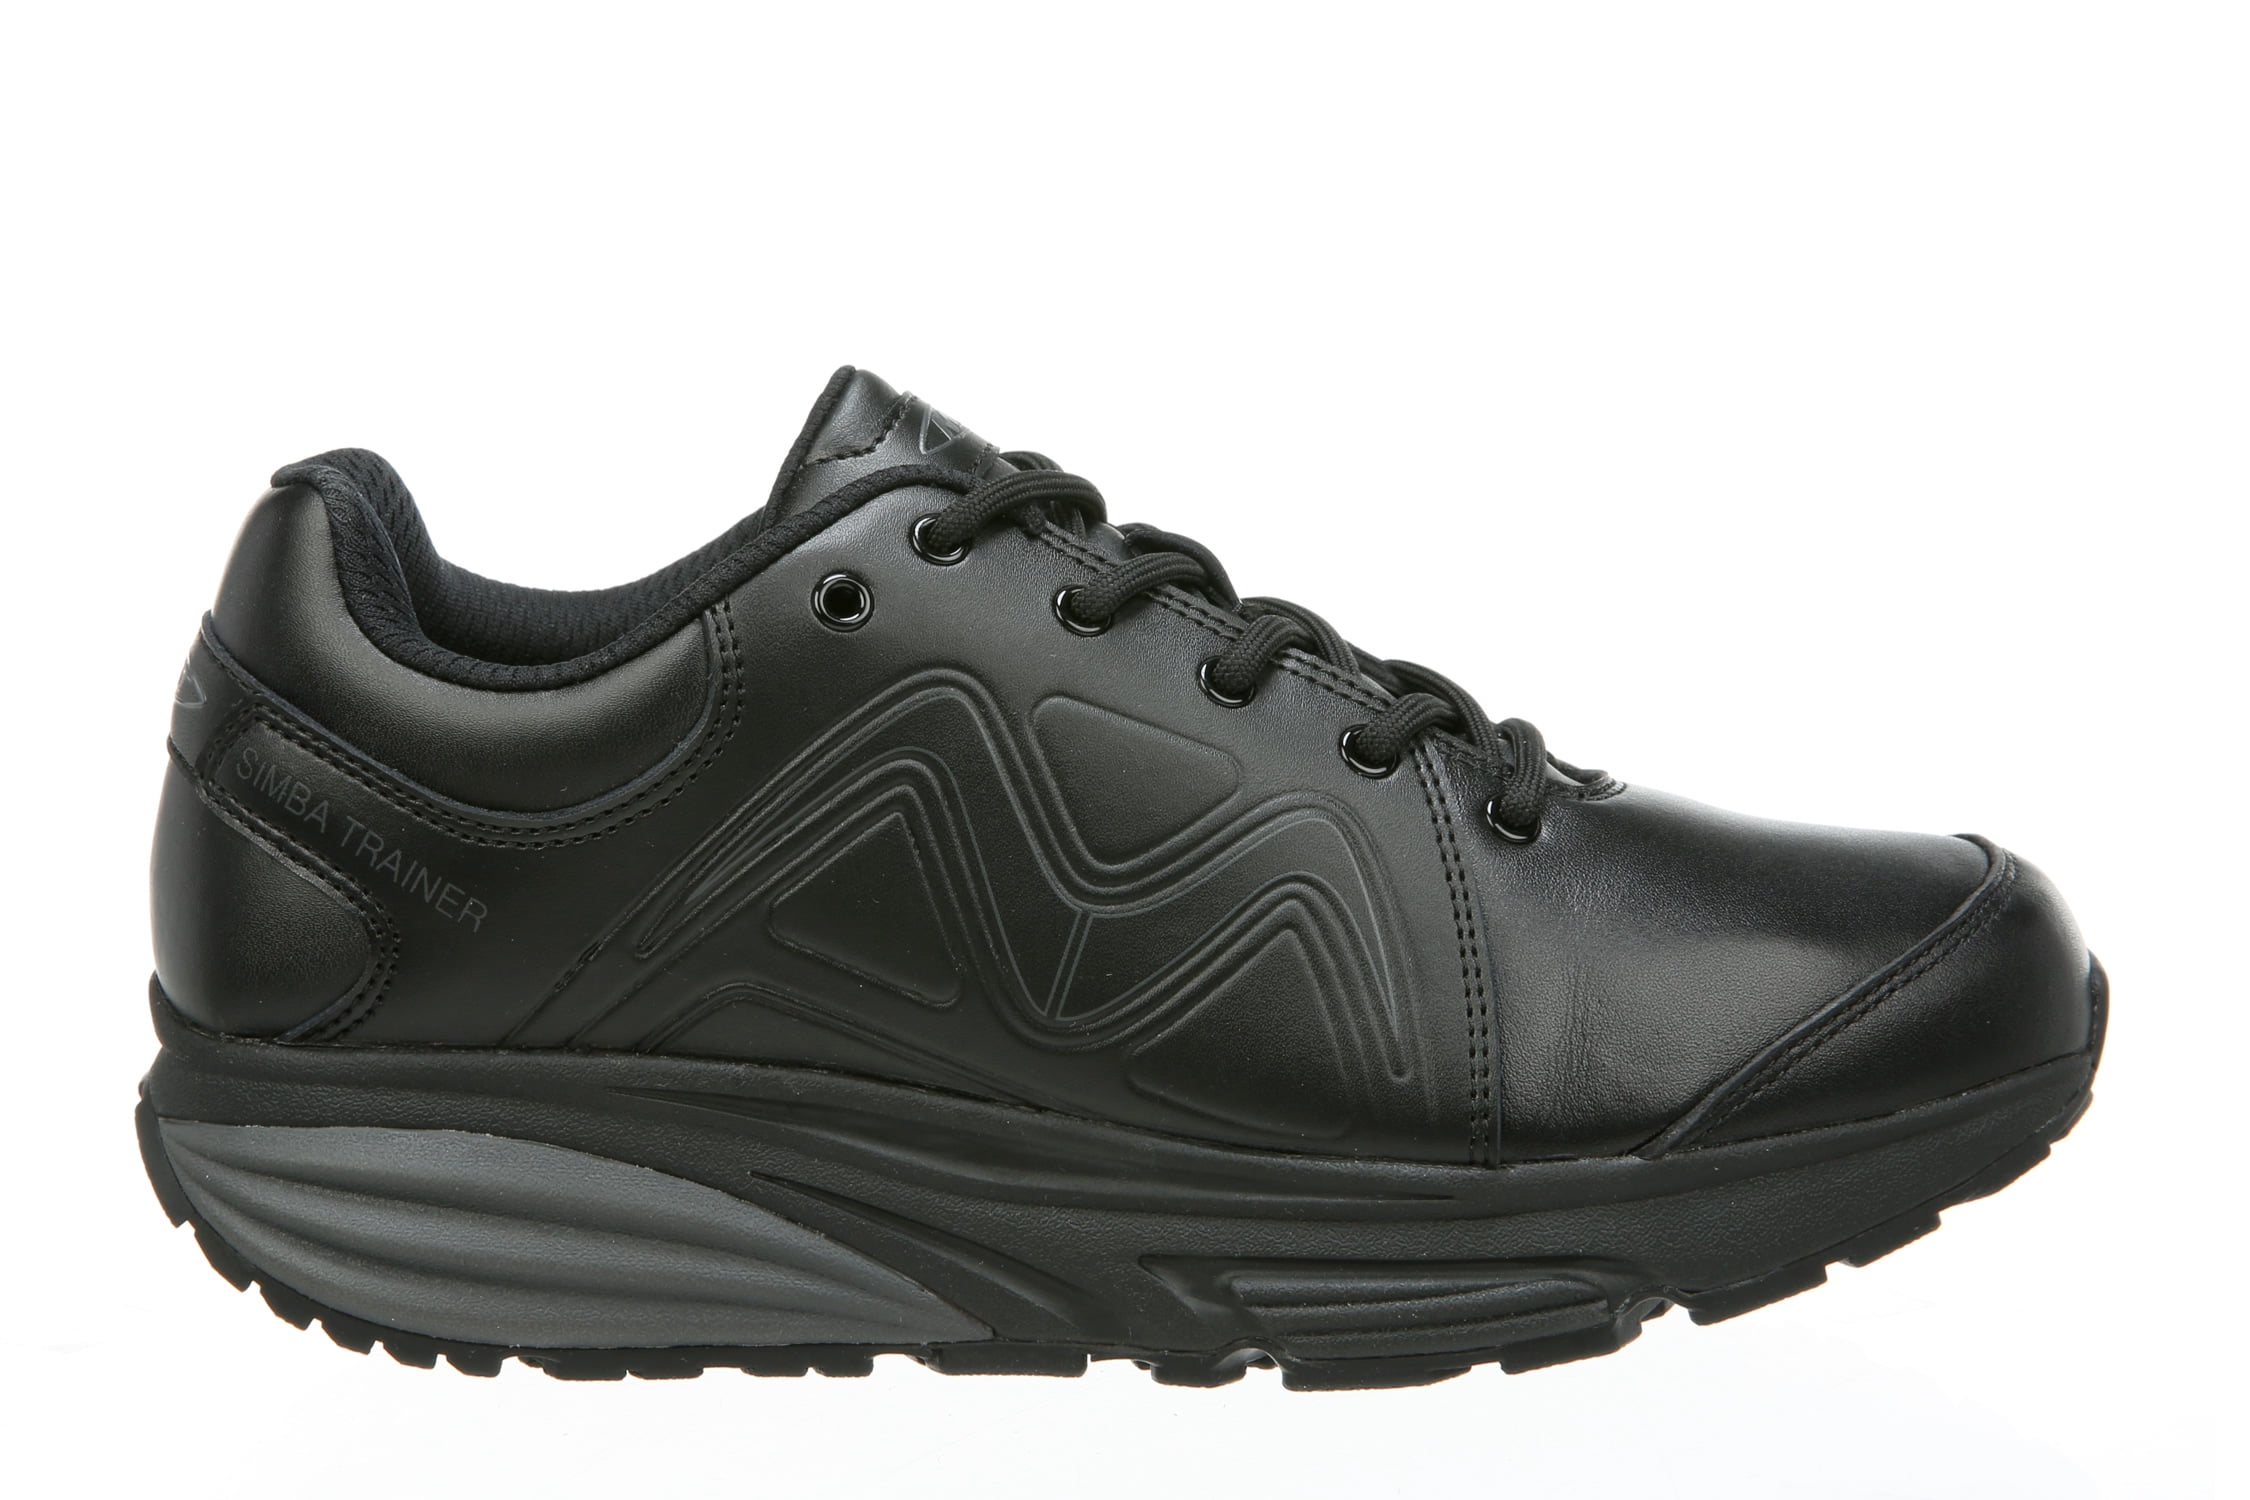 MBT - MBT Shoes Women's Simba Trainer Athletic Shoe: 7 Medium (D) Black ...